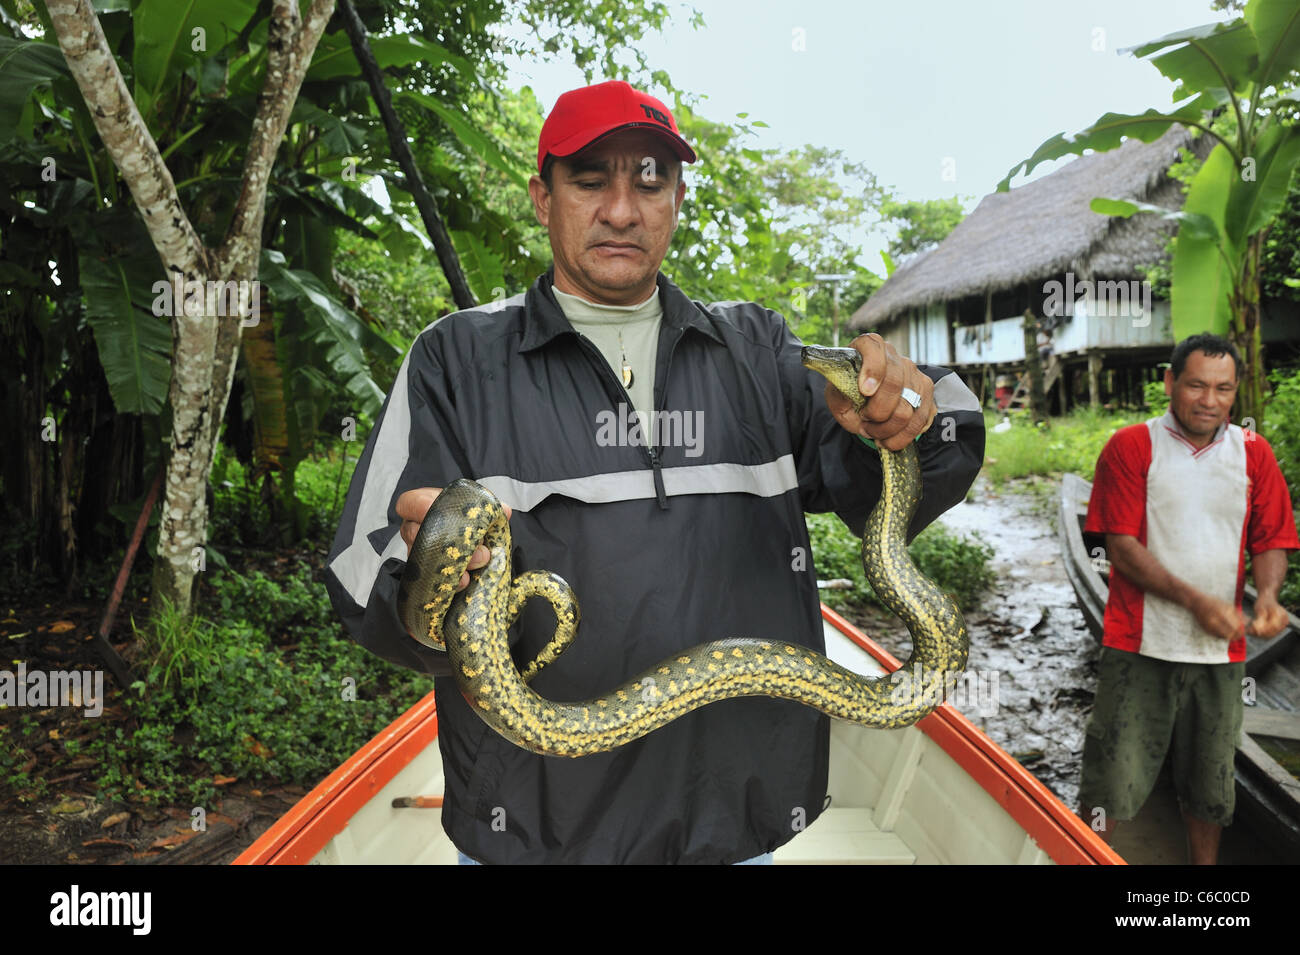 Guida turistica che tiene catturato il serpente, il fiume del Amazon, Perù Foto Stock